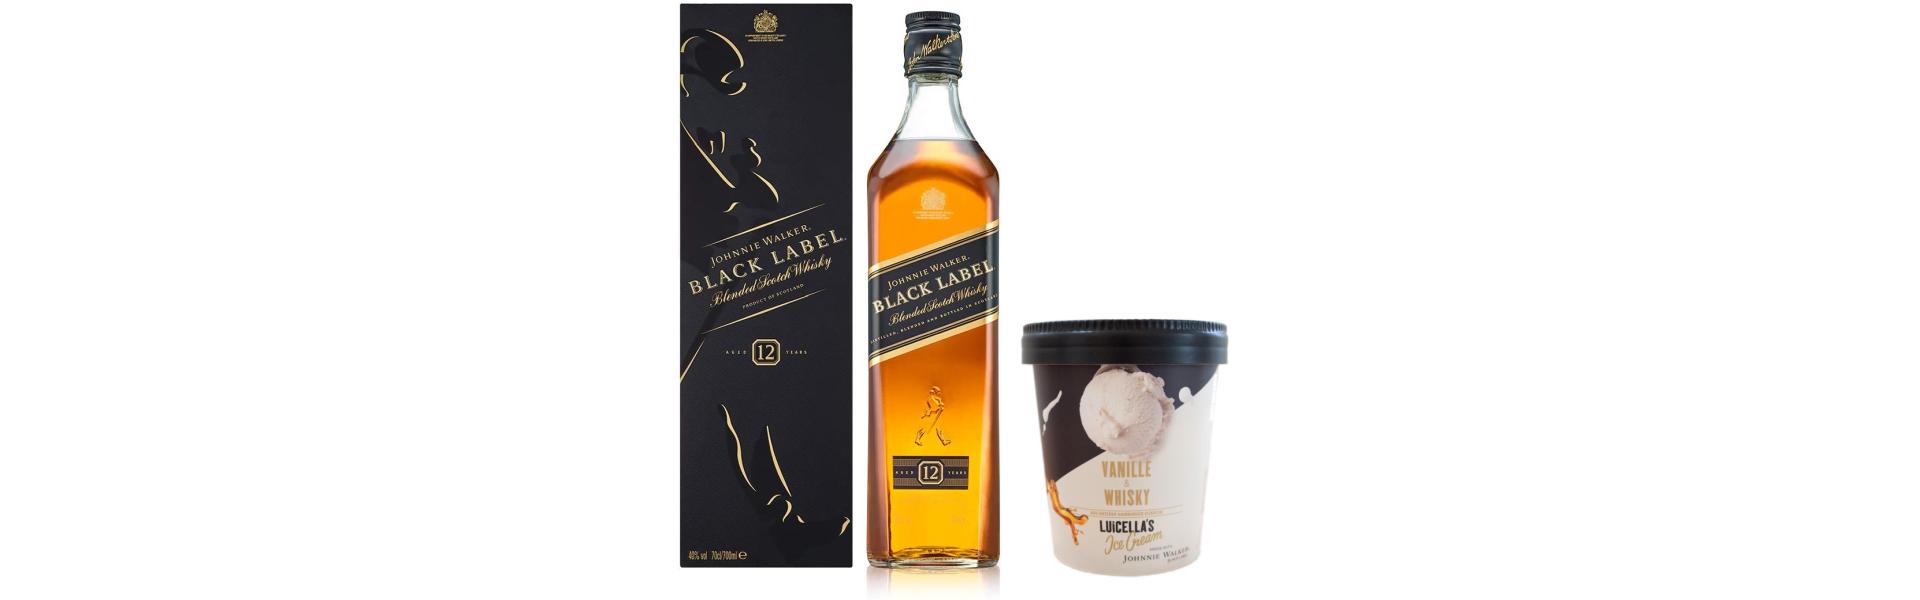 PR Johnnie Walker X Luicella S Ice Cream WhiskyExperts